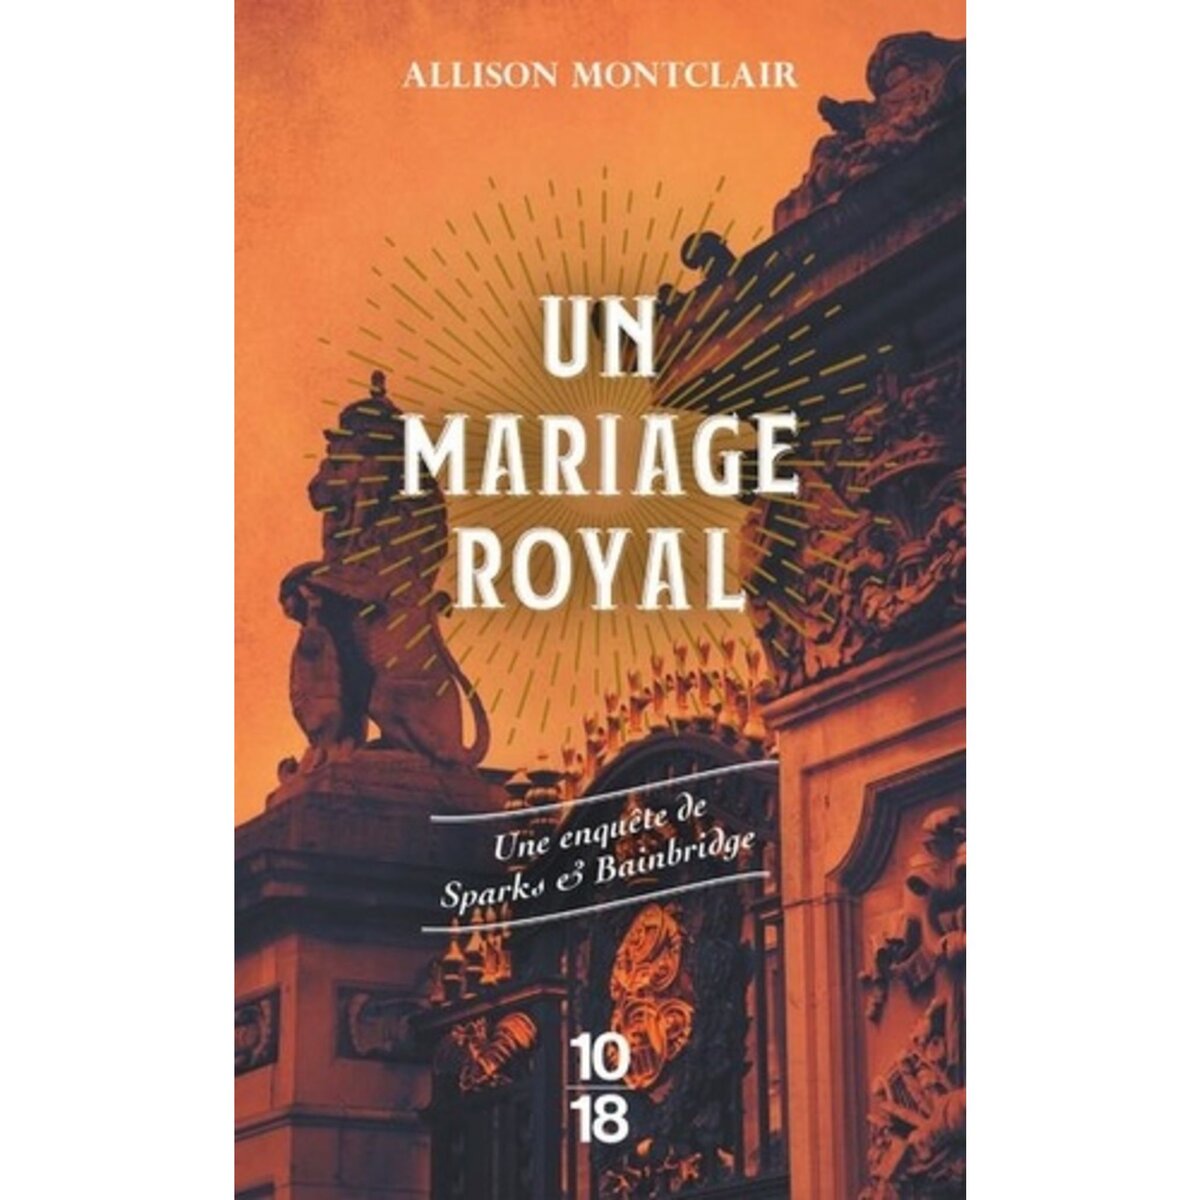  UN MARIAGE ROYAL, Montclair Allison